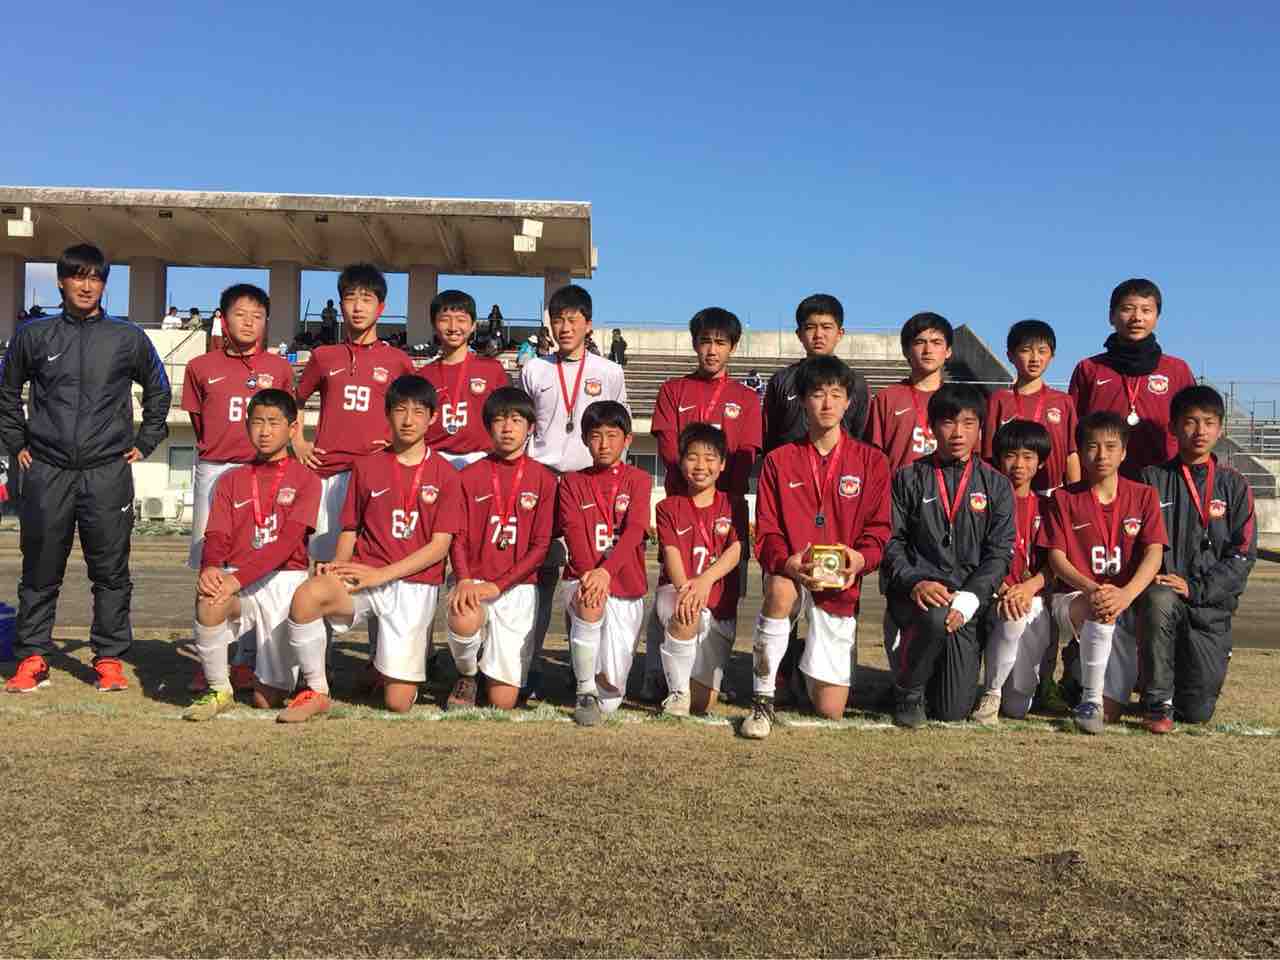 高校サッカー 太陽スポーツクラブ国分u 15 Staffブログ